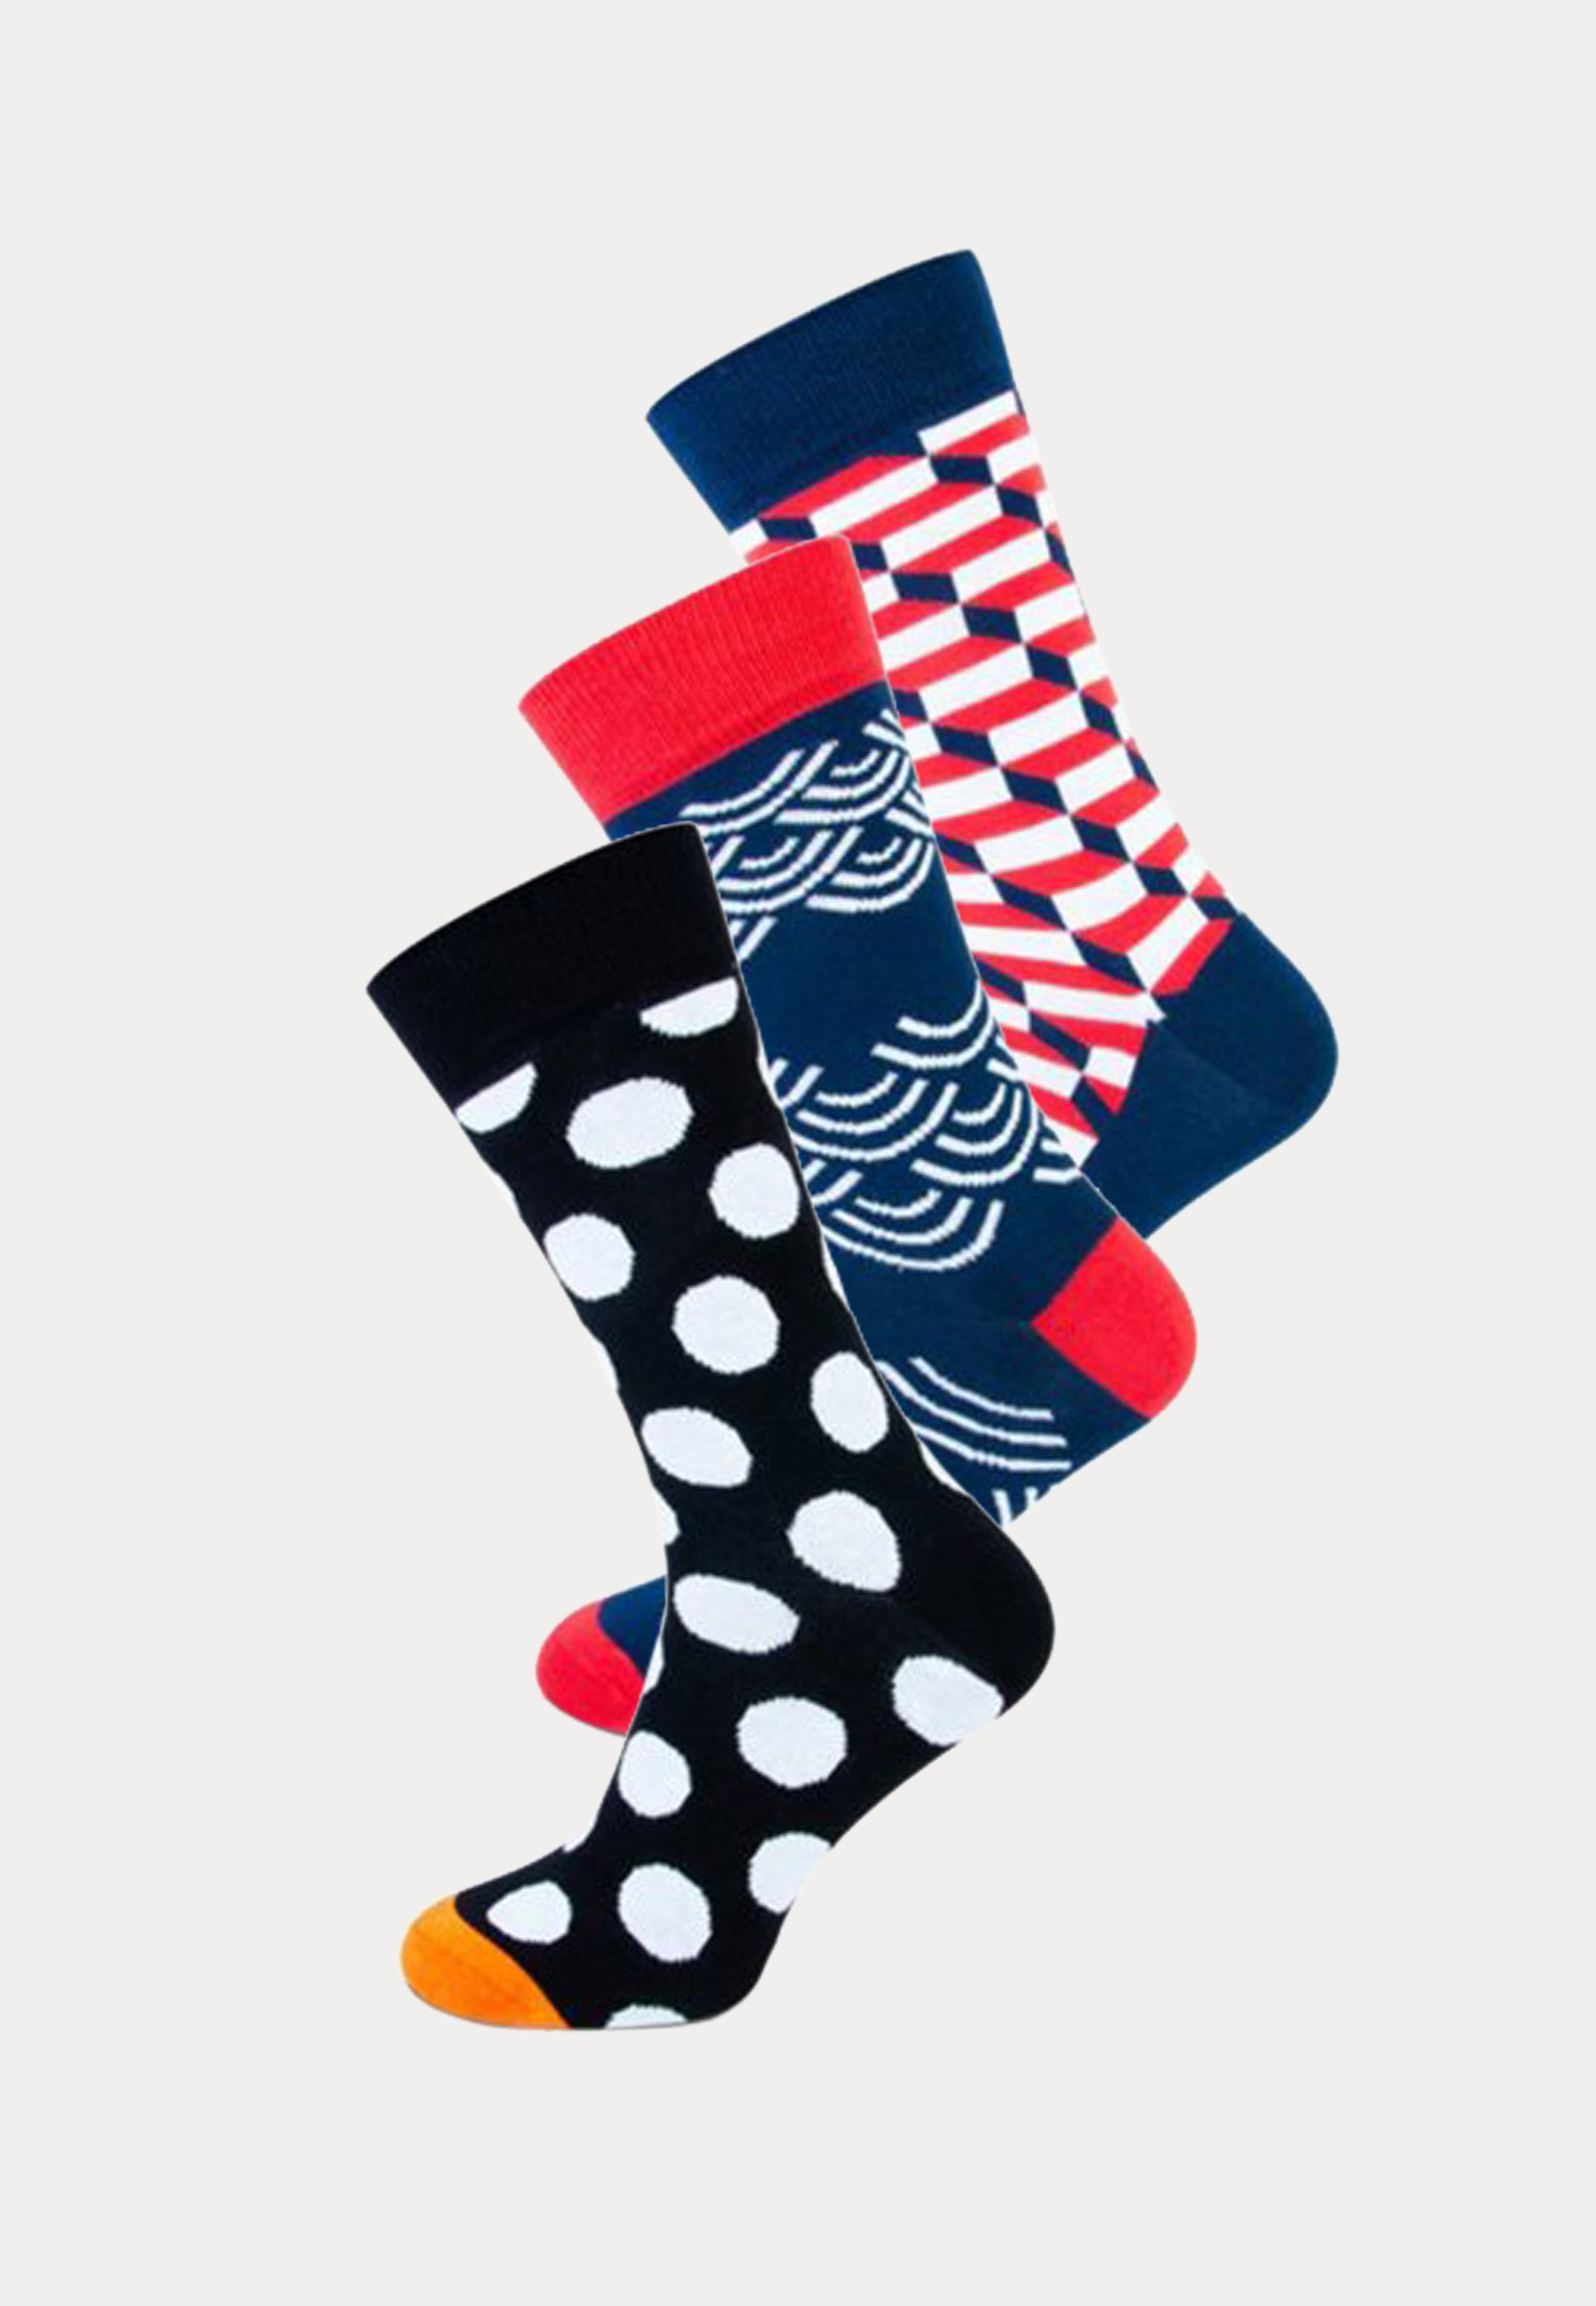 3 paar Clyde fashion socks van het merk Teckel